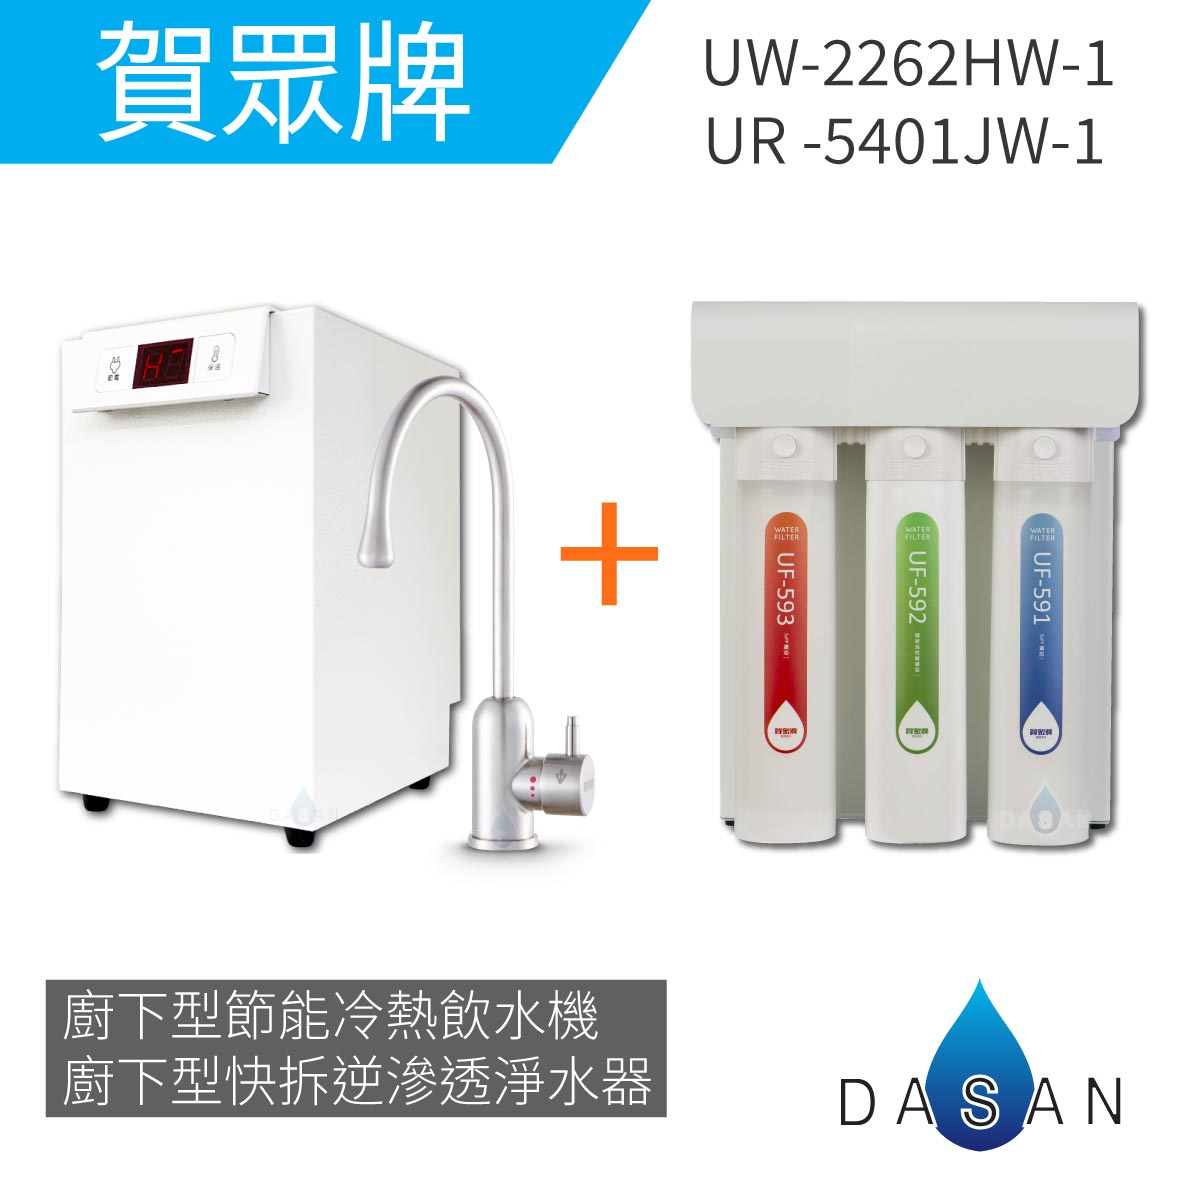 【賀眾牌】UW- 2262 HW-1廚下型節能冷熱飲水機加熱器+UR- 5401 JW-1廚下型快拆式逆滲透淨水器